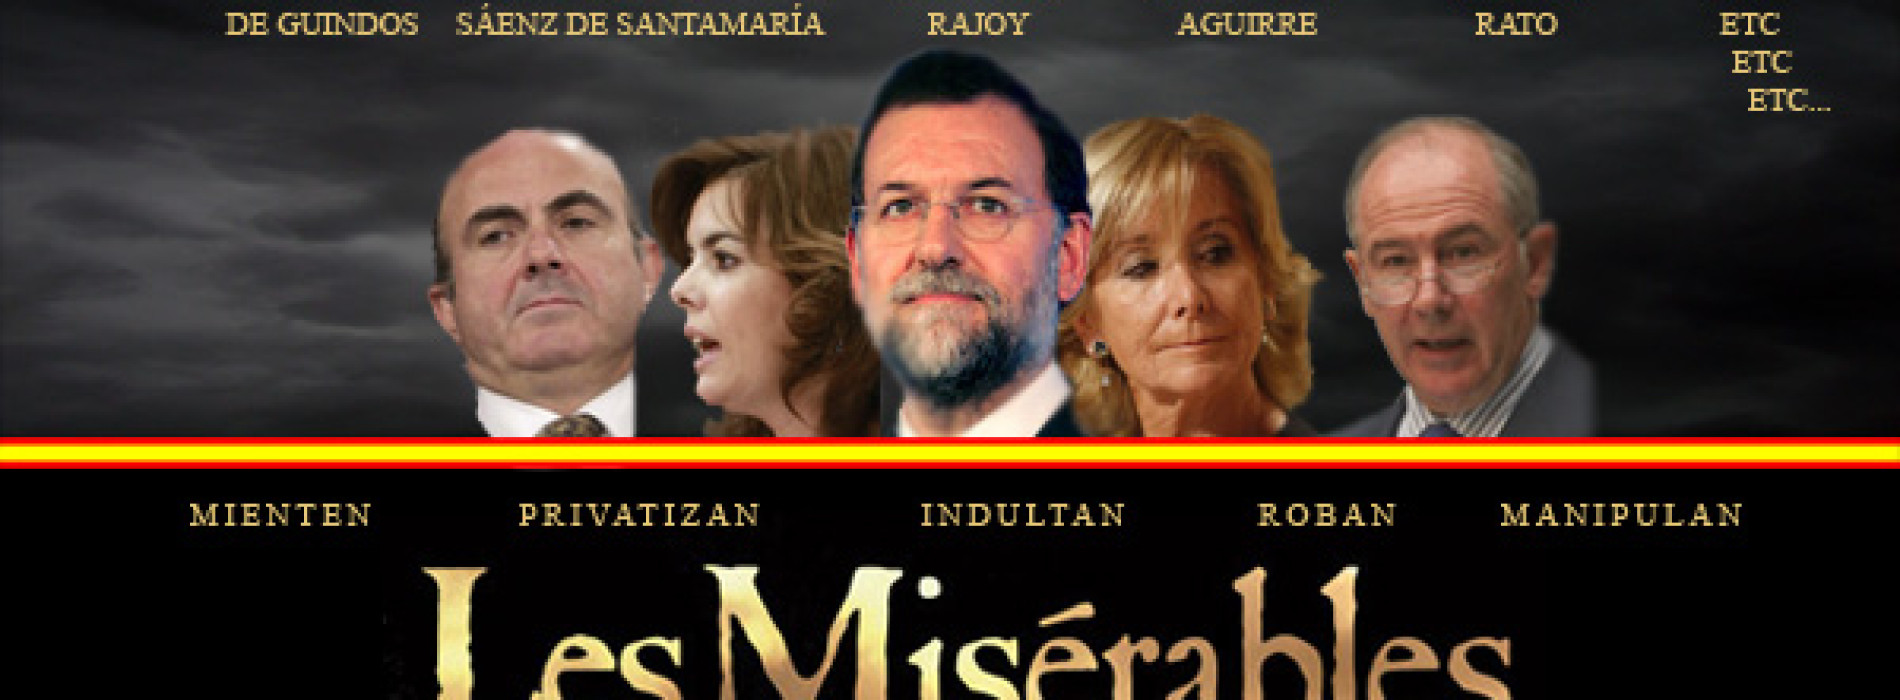 Los Miserables, el drama que arrasa en España